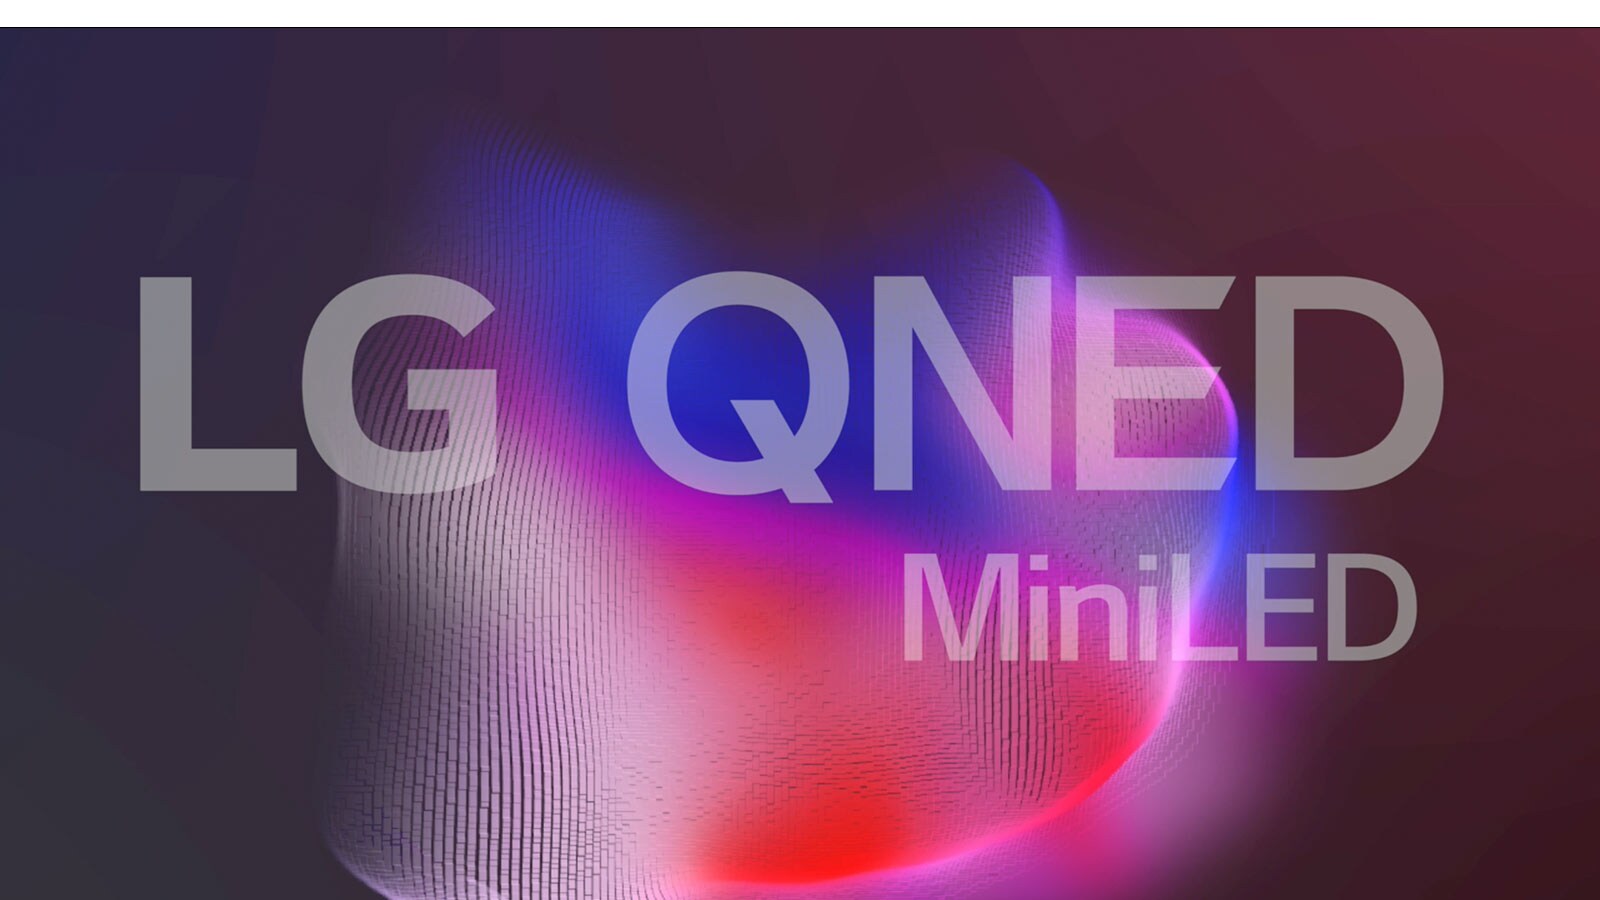 Televizijski zaslon z logotipom LG QNED Mini LED in majhnimi, svetlimi delci tvorijo obrise siamske lovske ribe (predvajajte video).